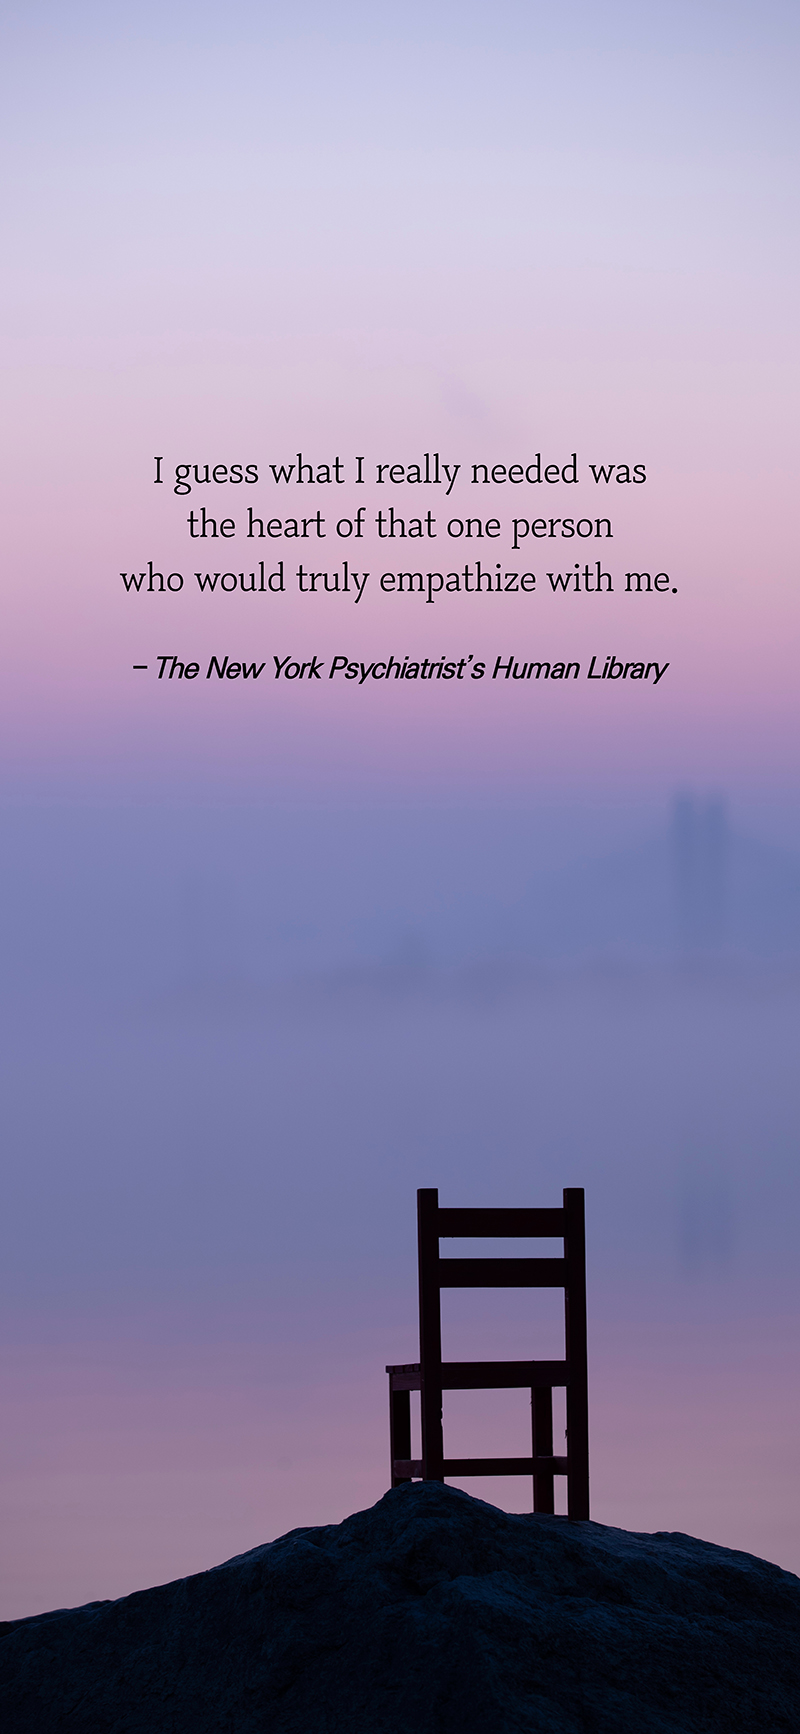 『뉴욕 정신과 의사의 사람 도서관』 핸드폰 바탕화면 이미지